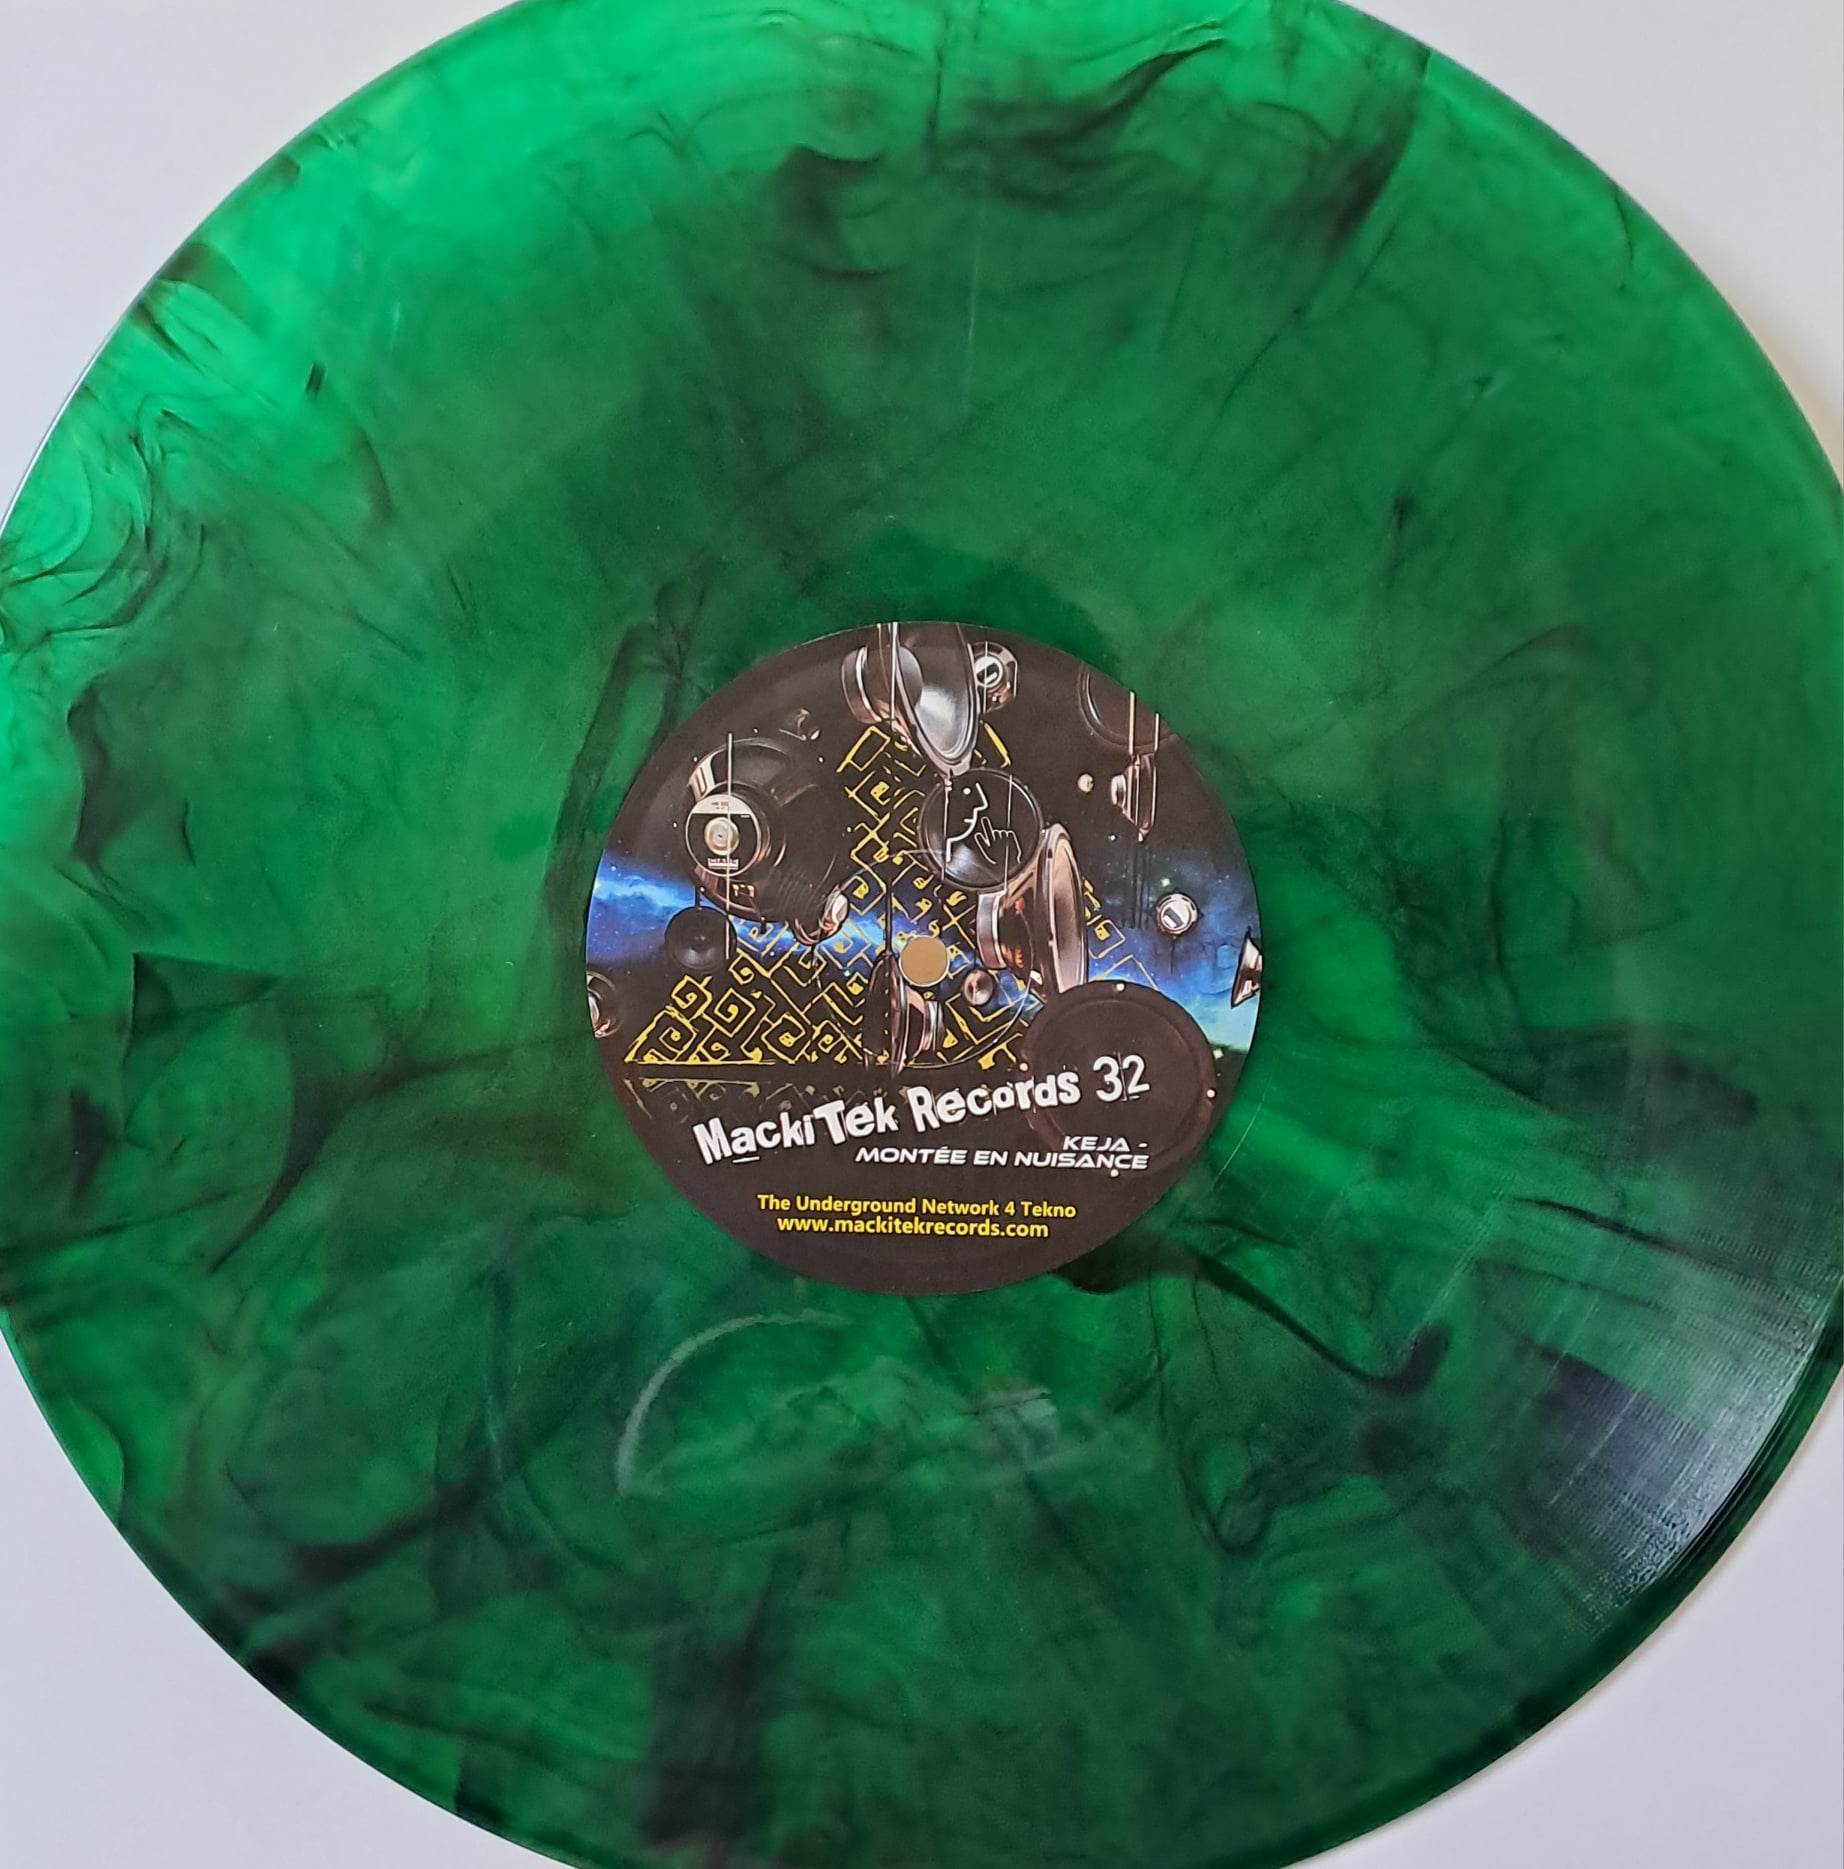 Mackitek Records 32 (Vert marbré) - vinyle freetekno